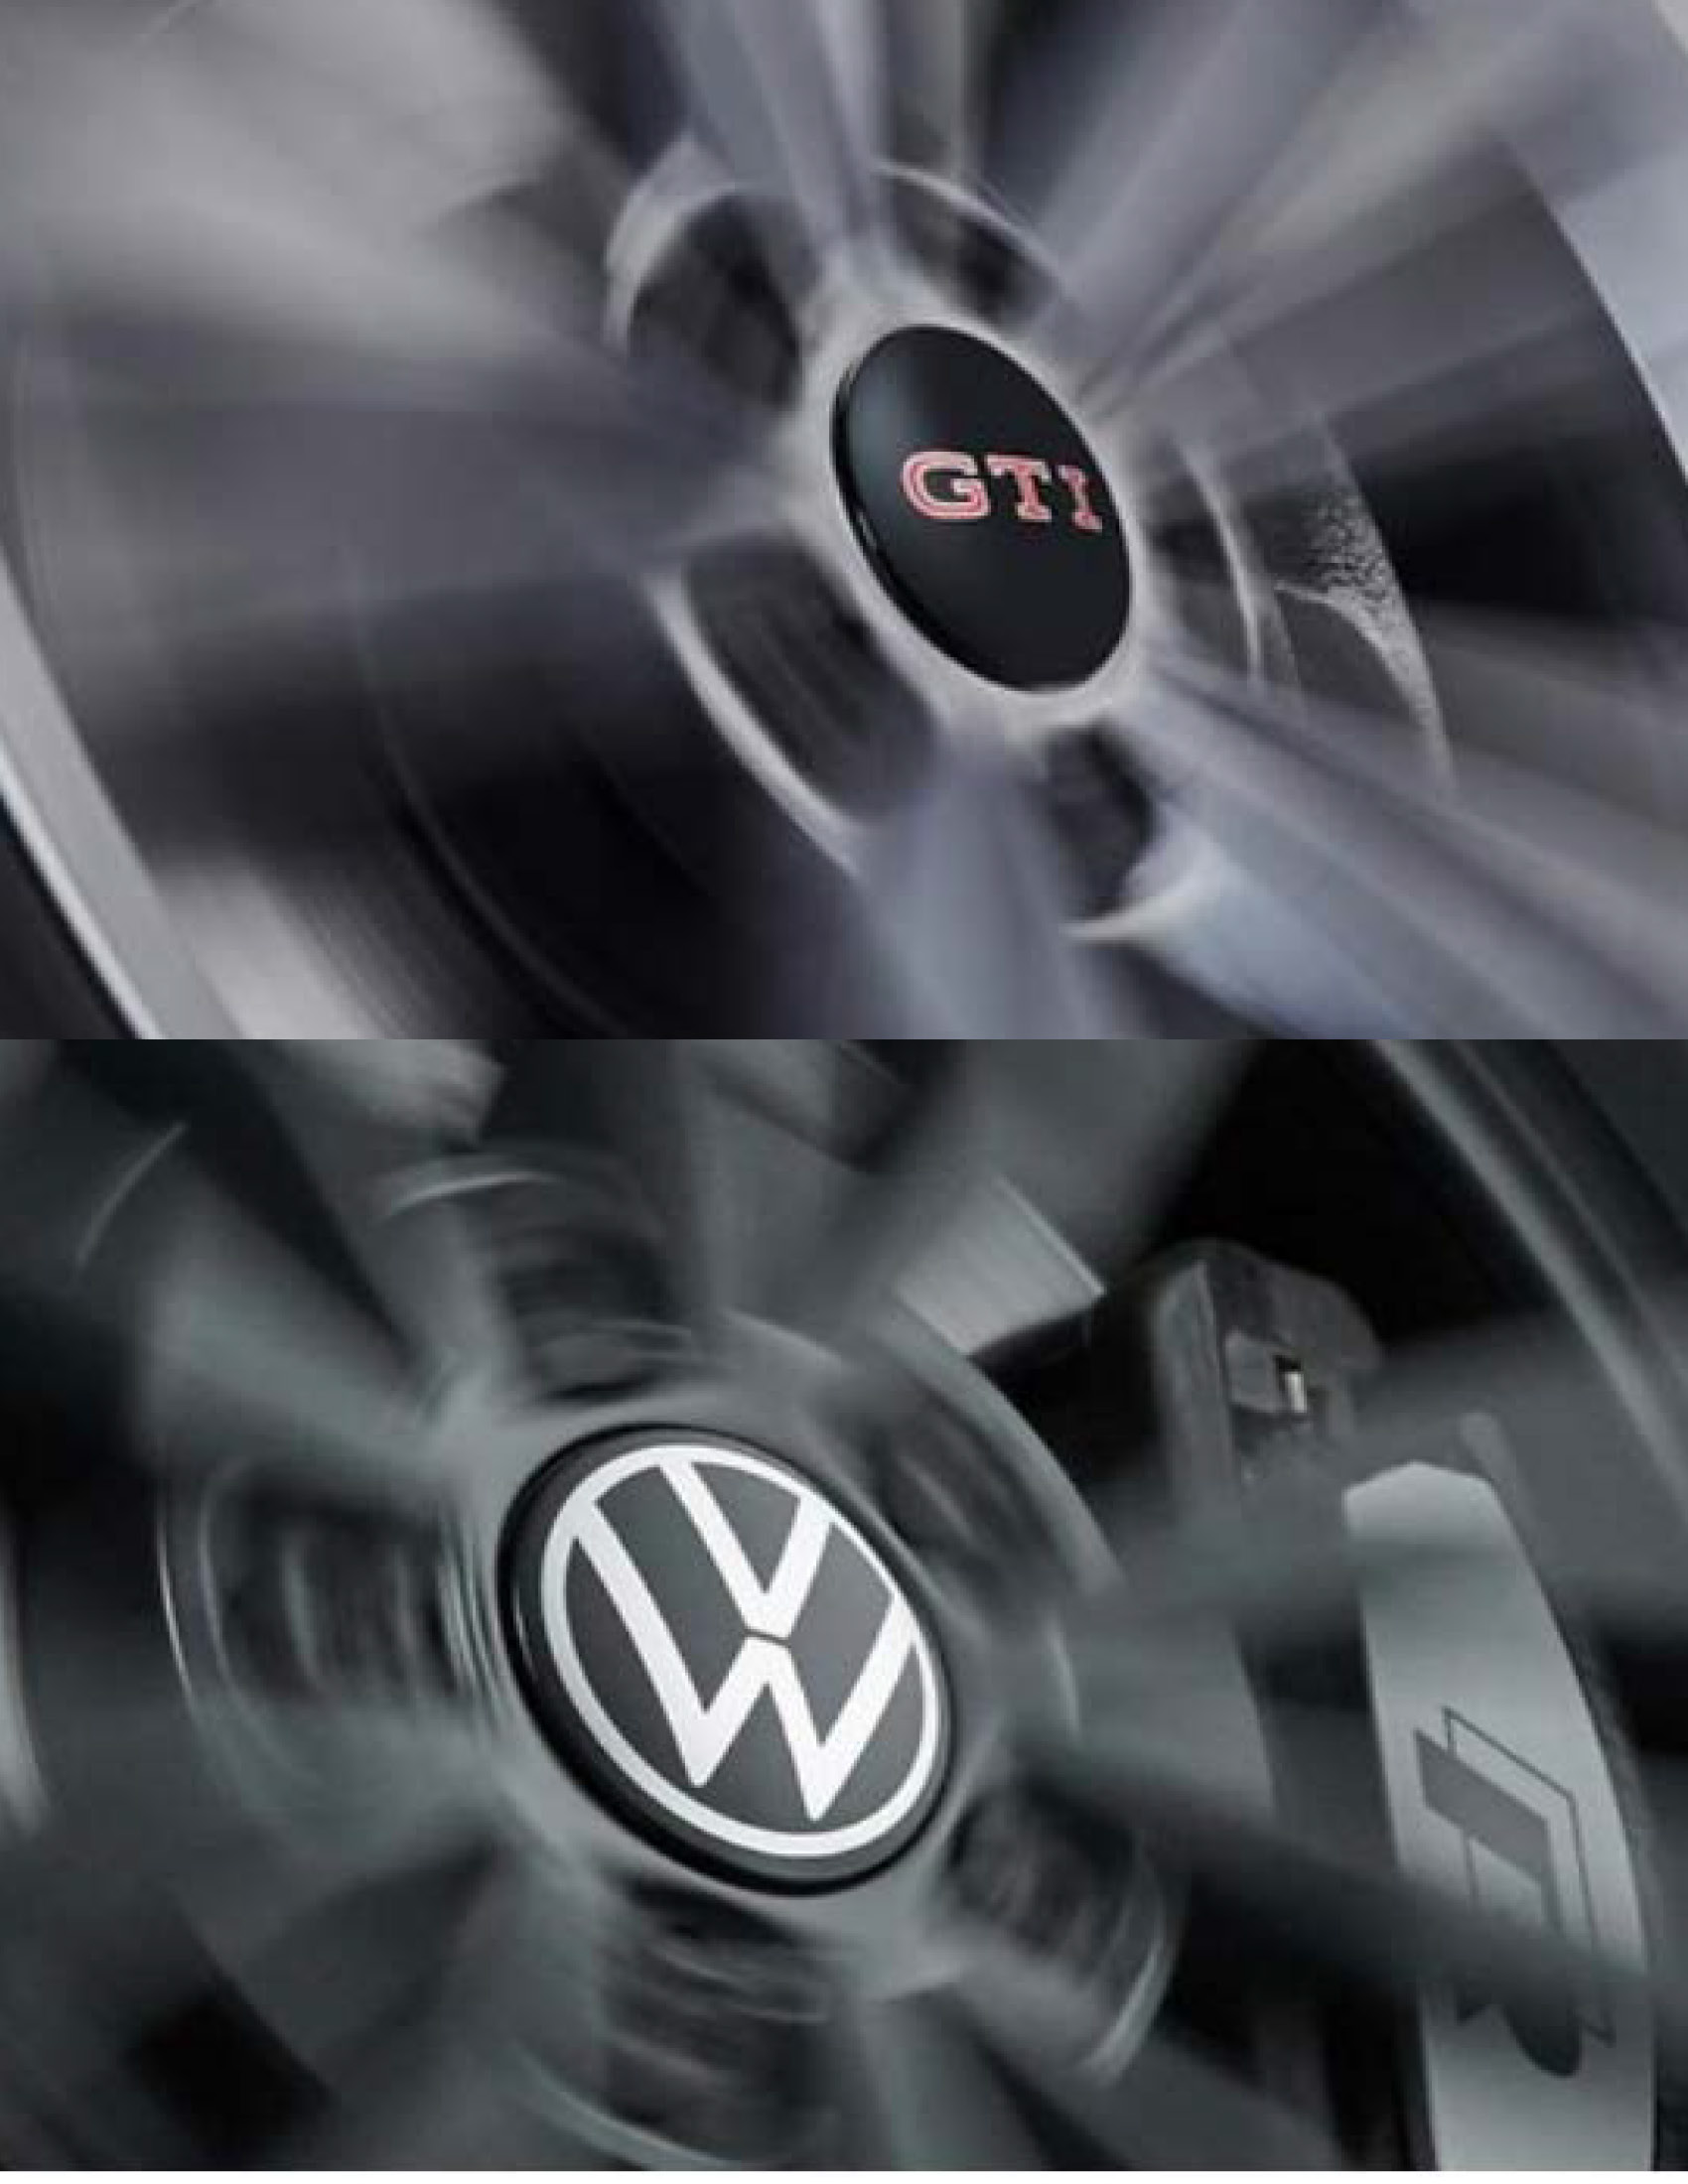 VW Nabenkappen für LM-Felge dynamisch – Auto-Ludwig Salzgitter Service  Volkswagen und Audi